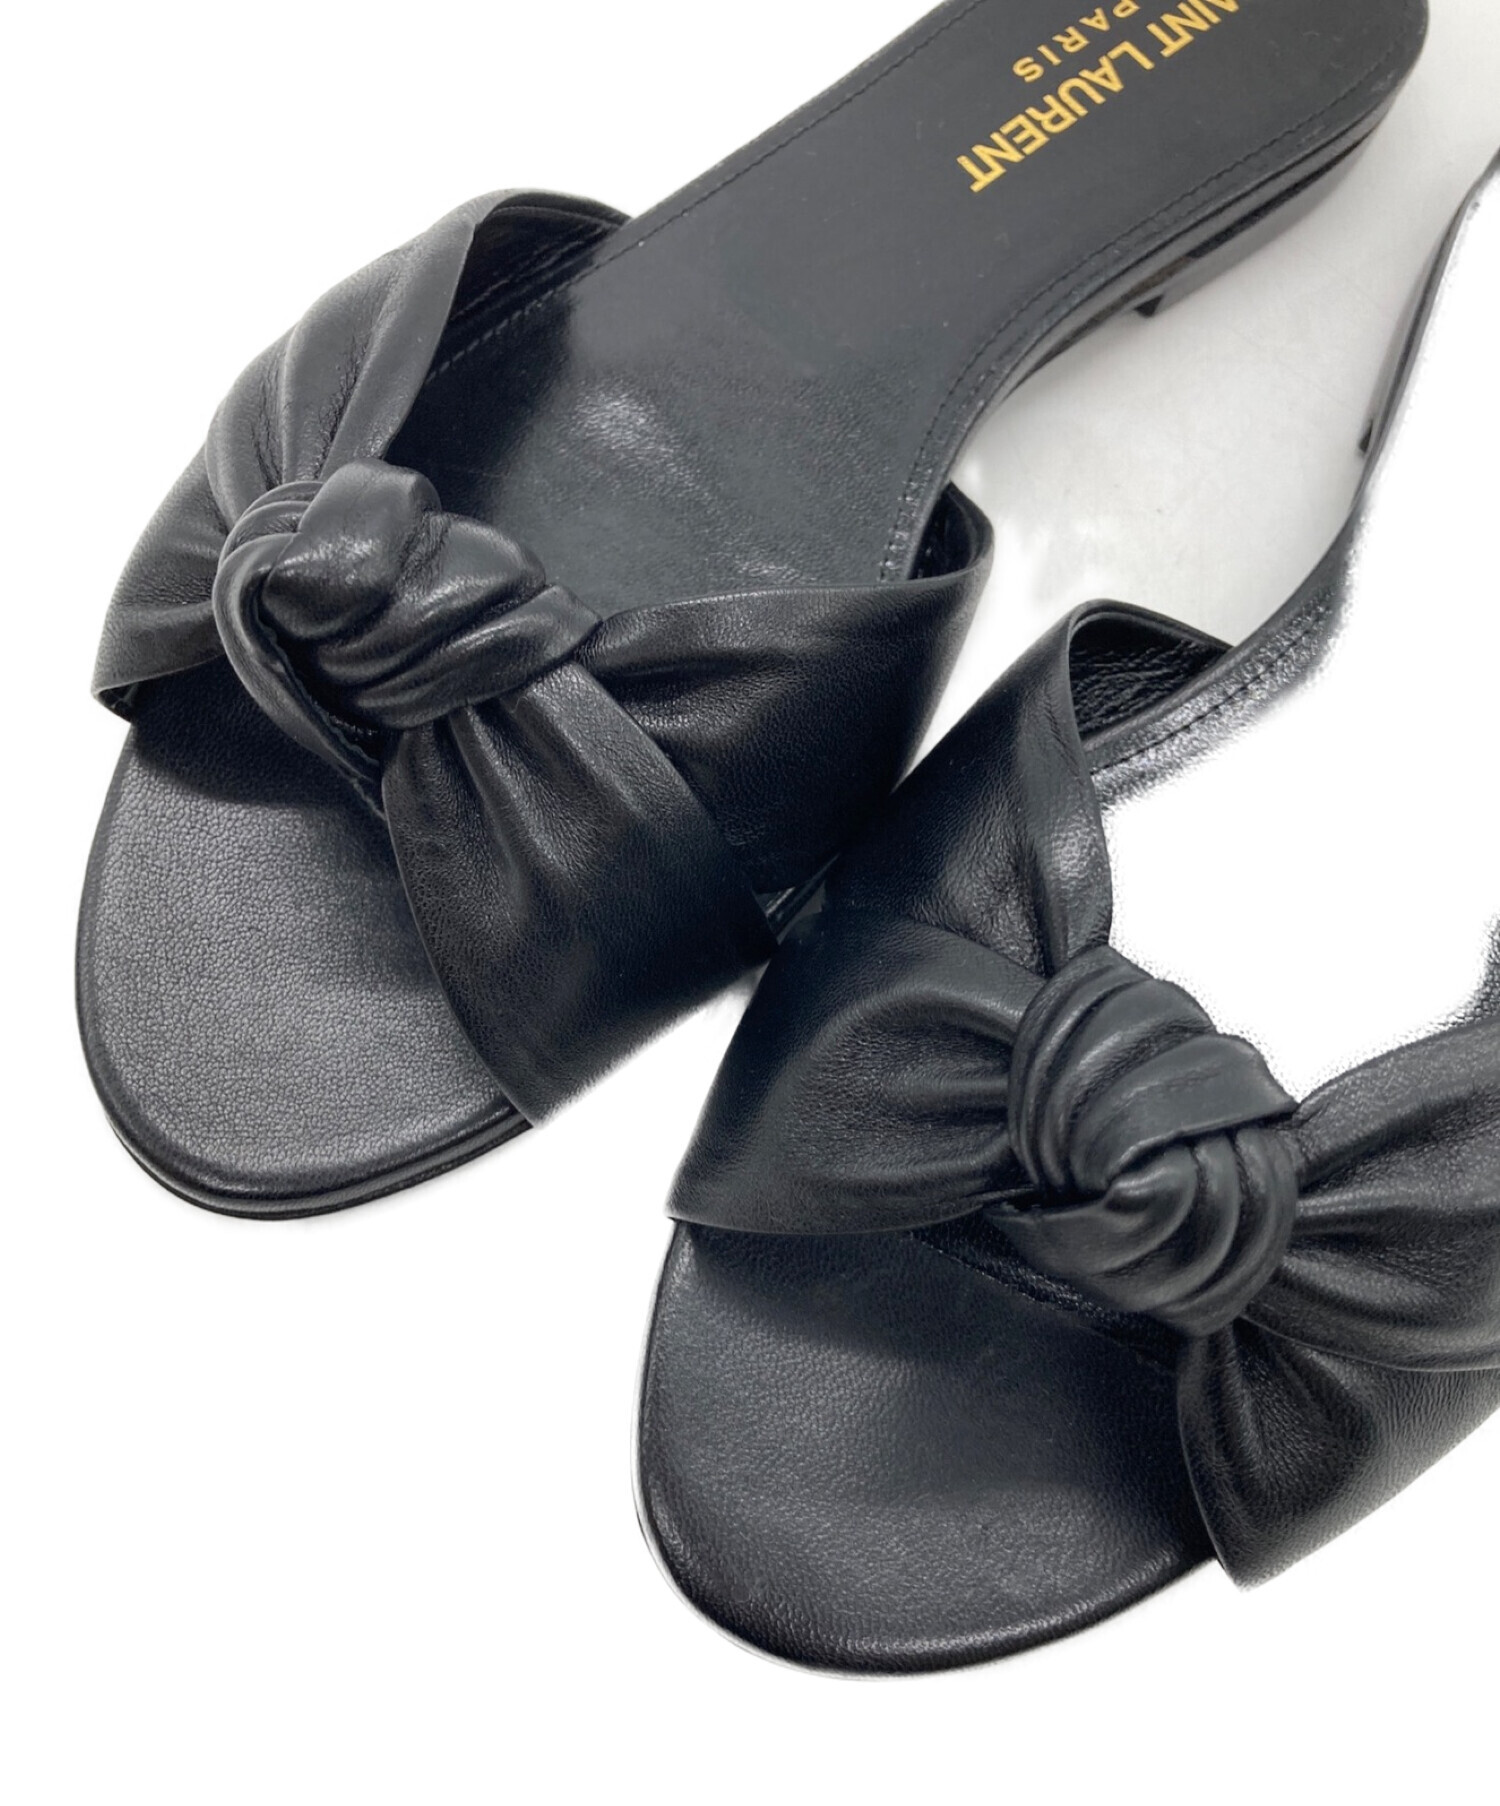 靴/シューズSAINT LAURENT PARIS サンダル EU43(28cm位) 黒